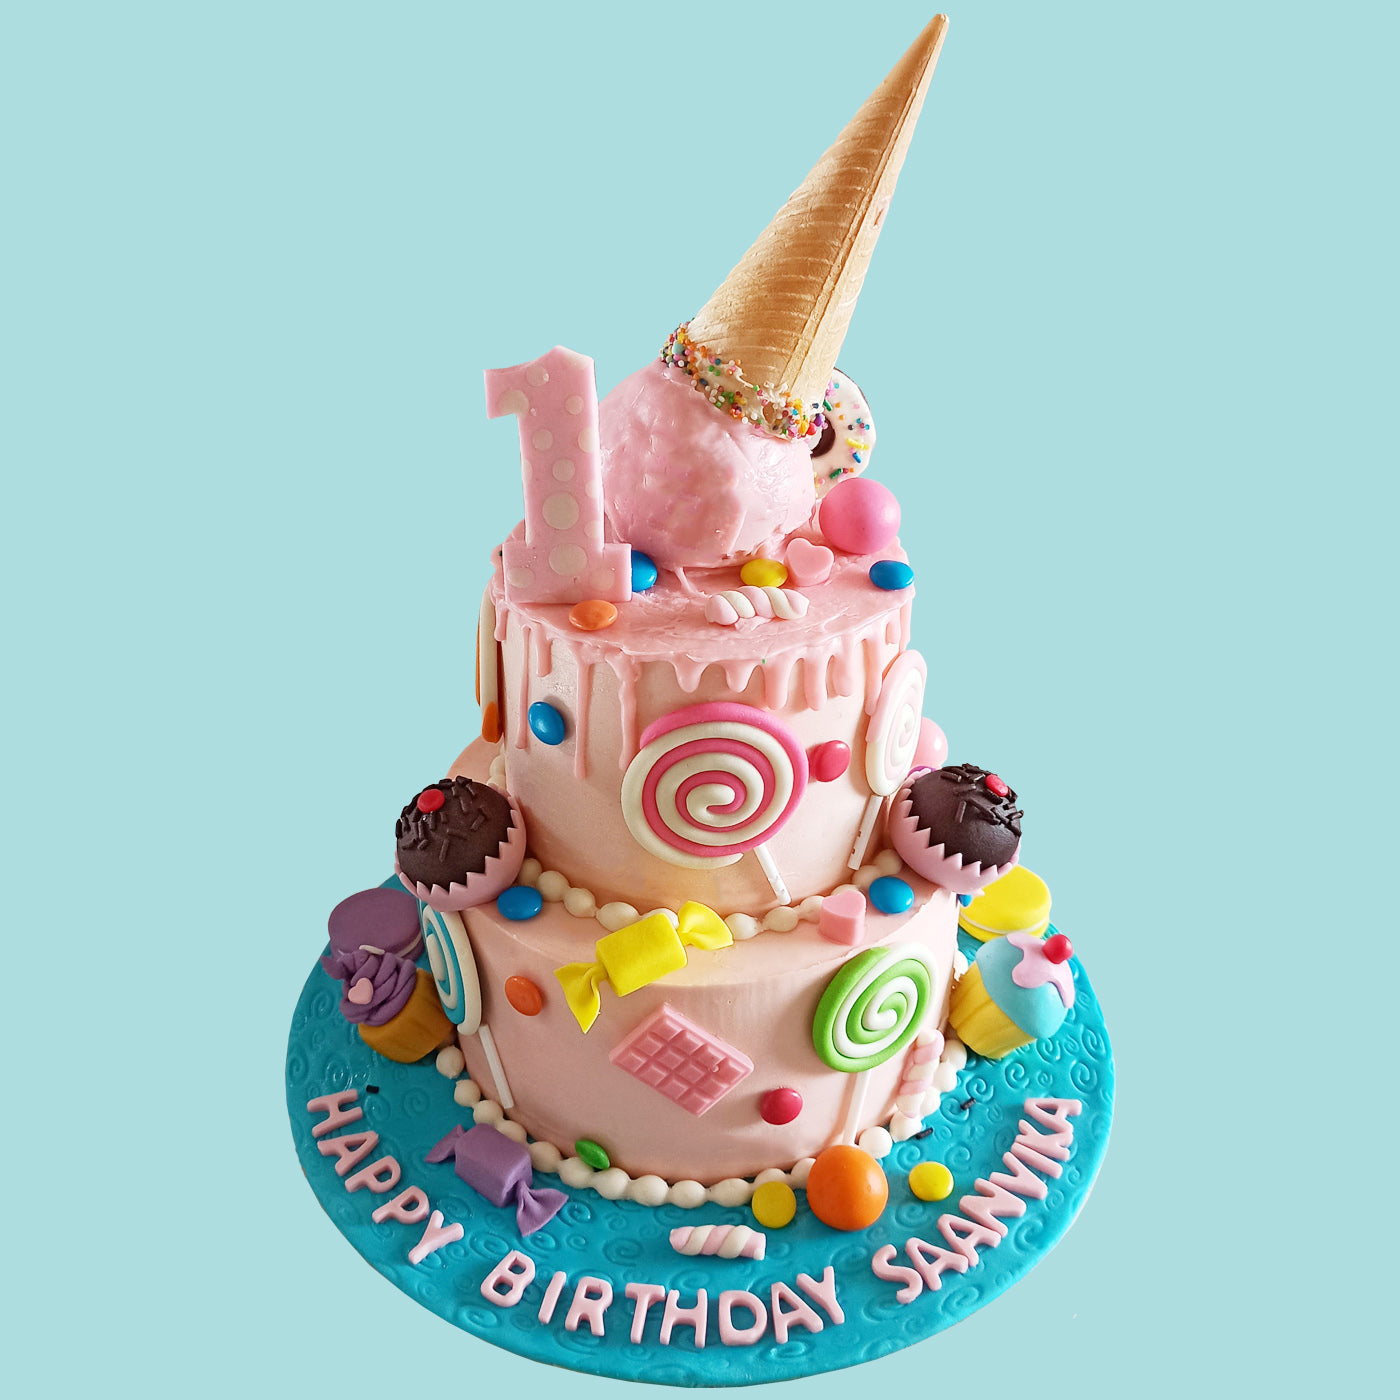 Step Cake Online | Send Step Cakes for Birthday | 1,2,3 Step Cake